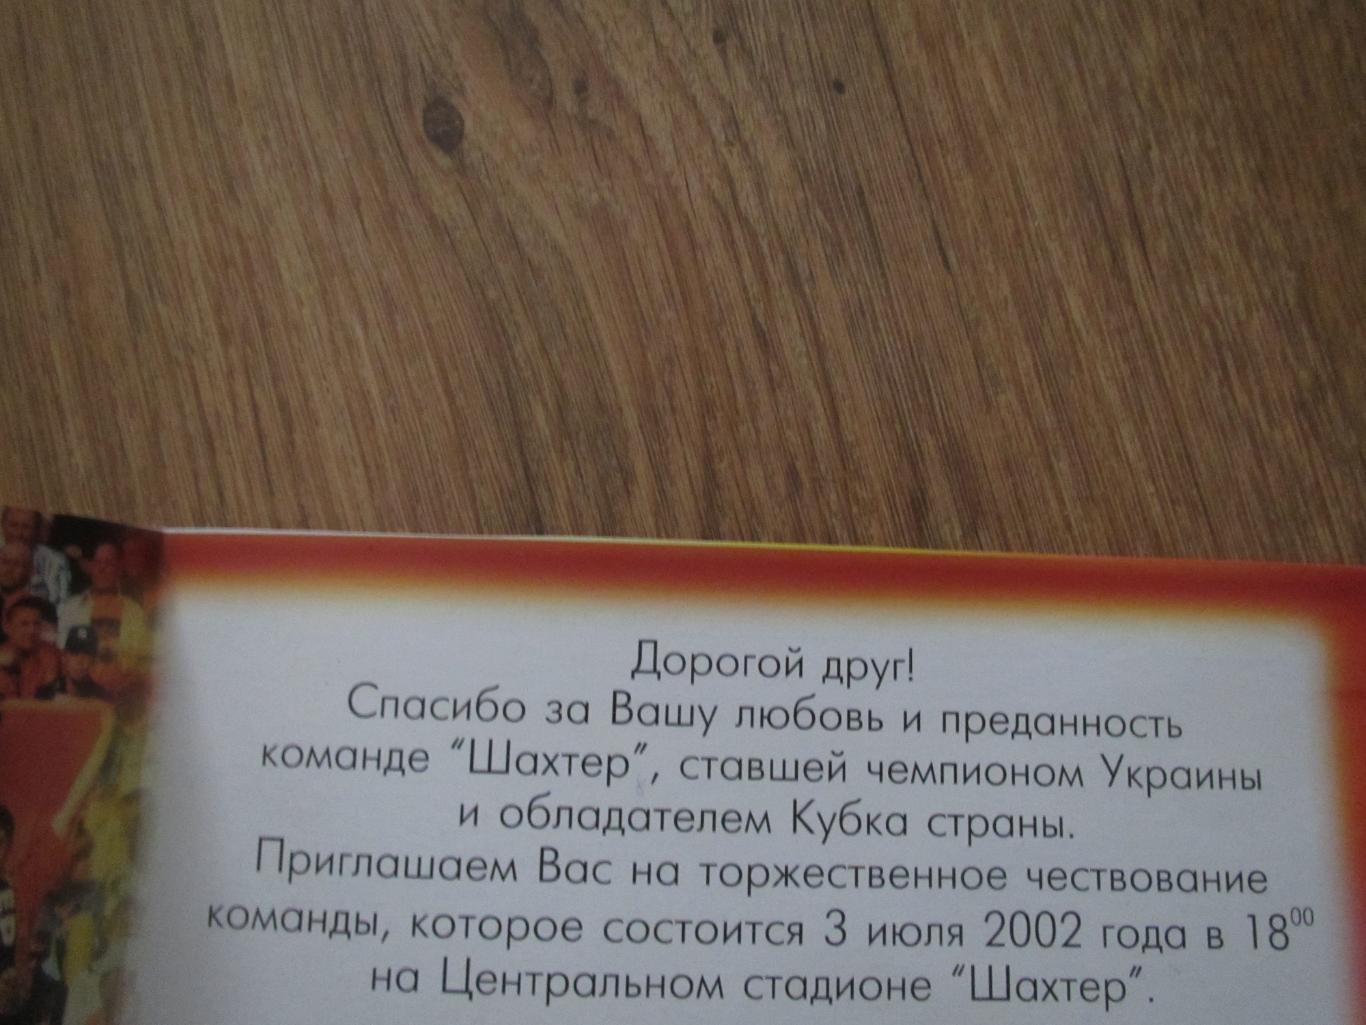 Приглашение на торжественное чествование команды Шахтер Донецк 3 июля 2002 1